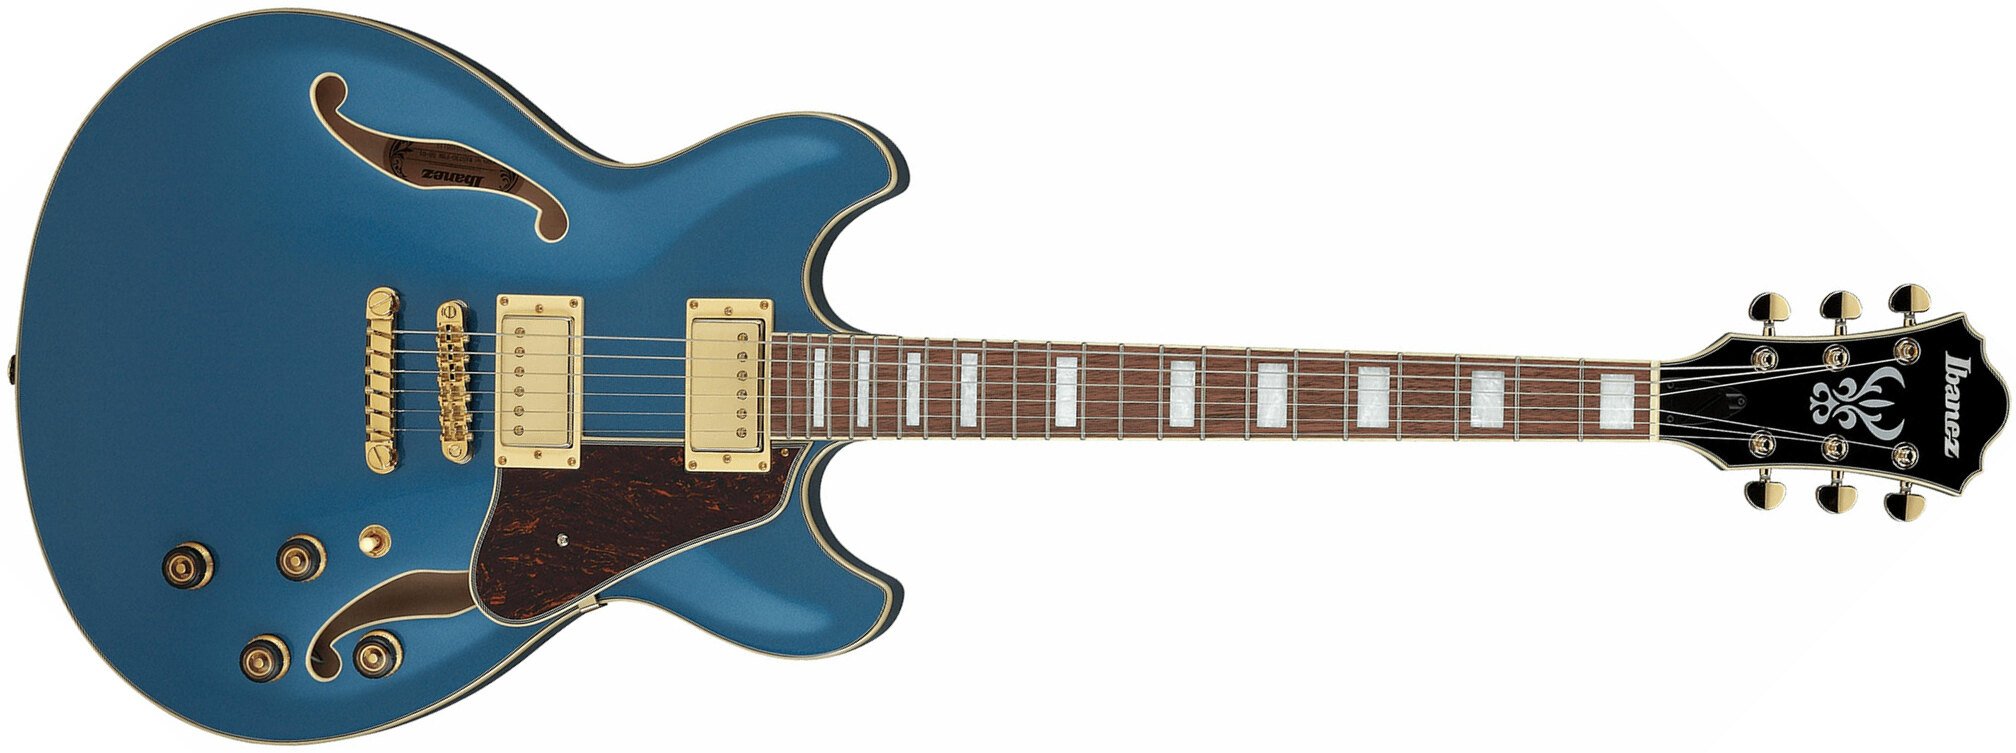 Ibanez As73g Pbm Artcore Hh Ht Noy - Prussian Blue Metallic - Guitare Électrique 1/2 Caisse - Main picture